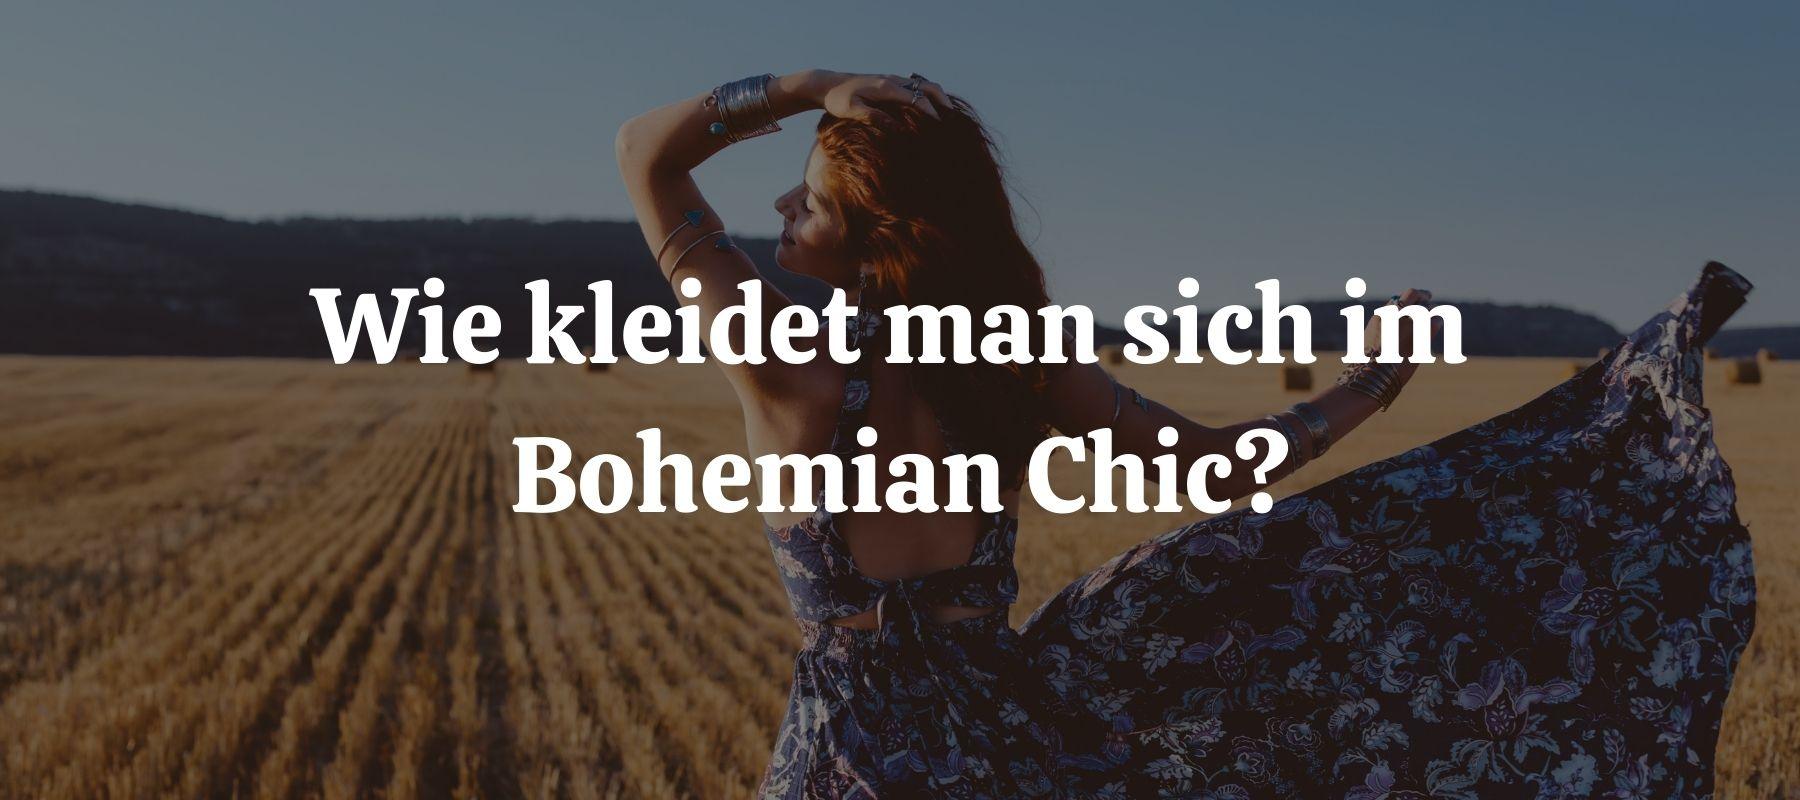 Wie kleidet man sich im Bohemian Chic?